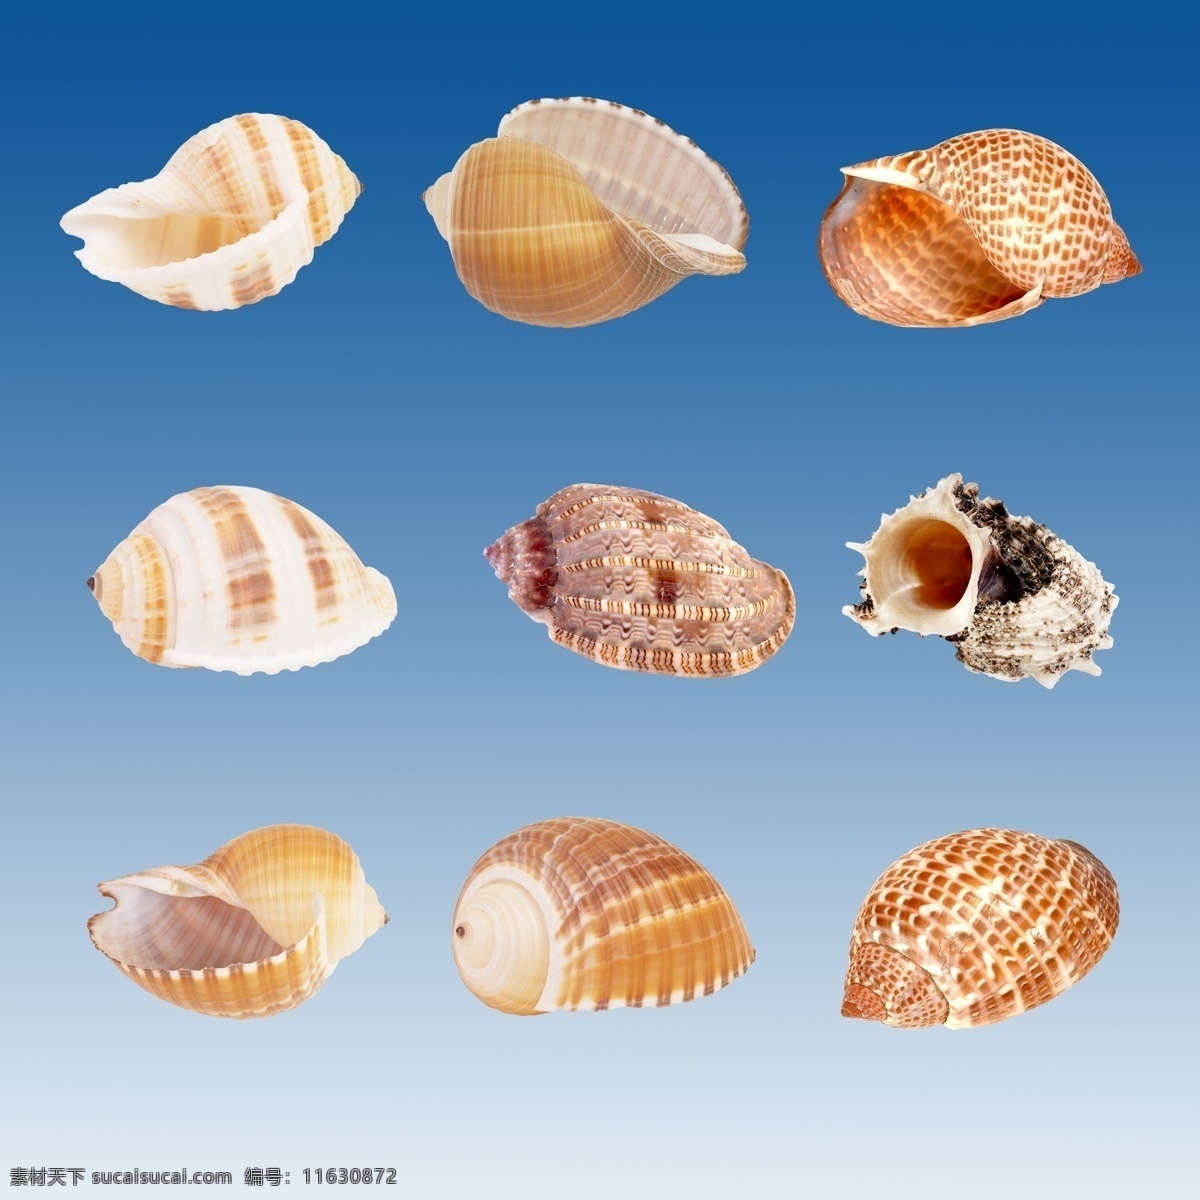 海螺贝壳图片 贝壳 海螺 扇贝 海洋动物 软体动物 螺类 海鲜水产 图案